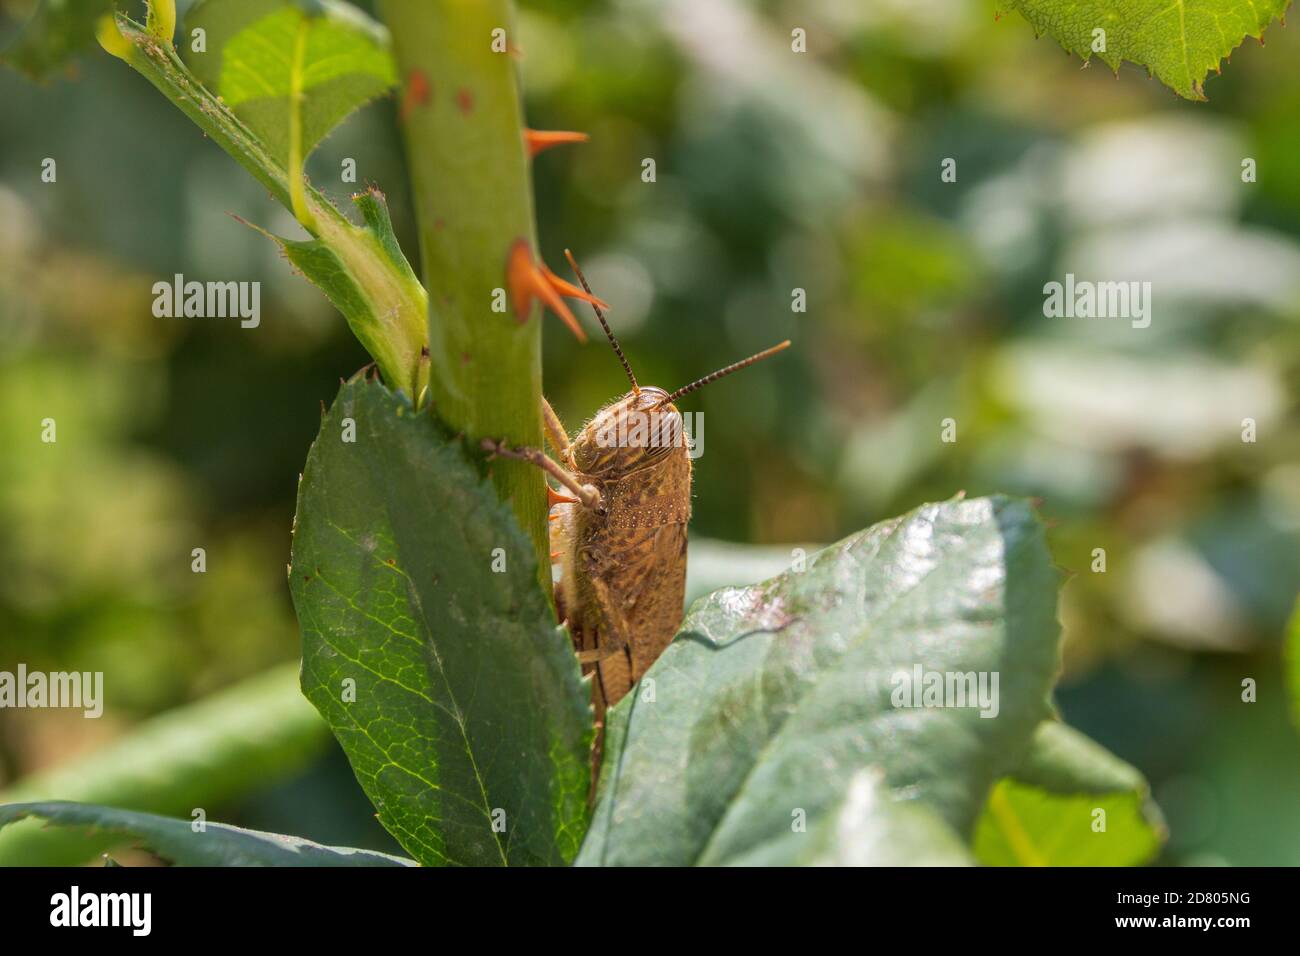 Anacridium aegyptium, Egyptian grasshopper on a Rose Bush Stock Photo